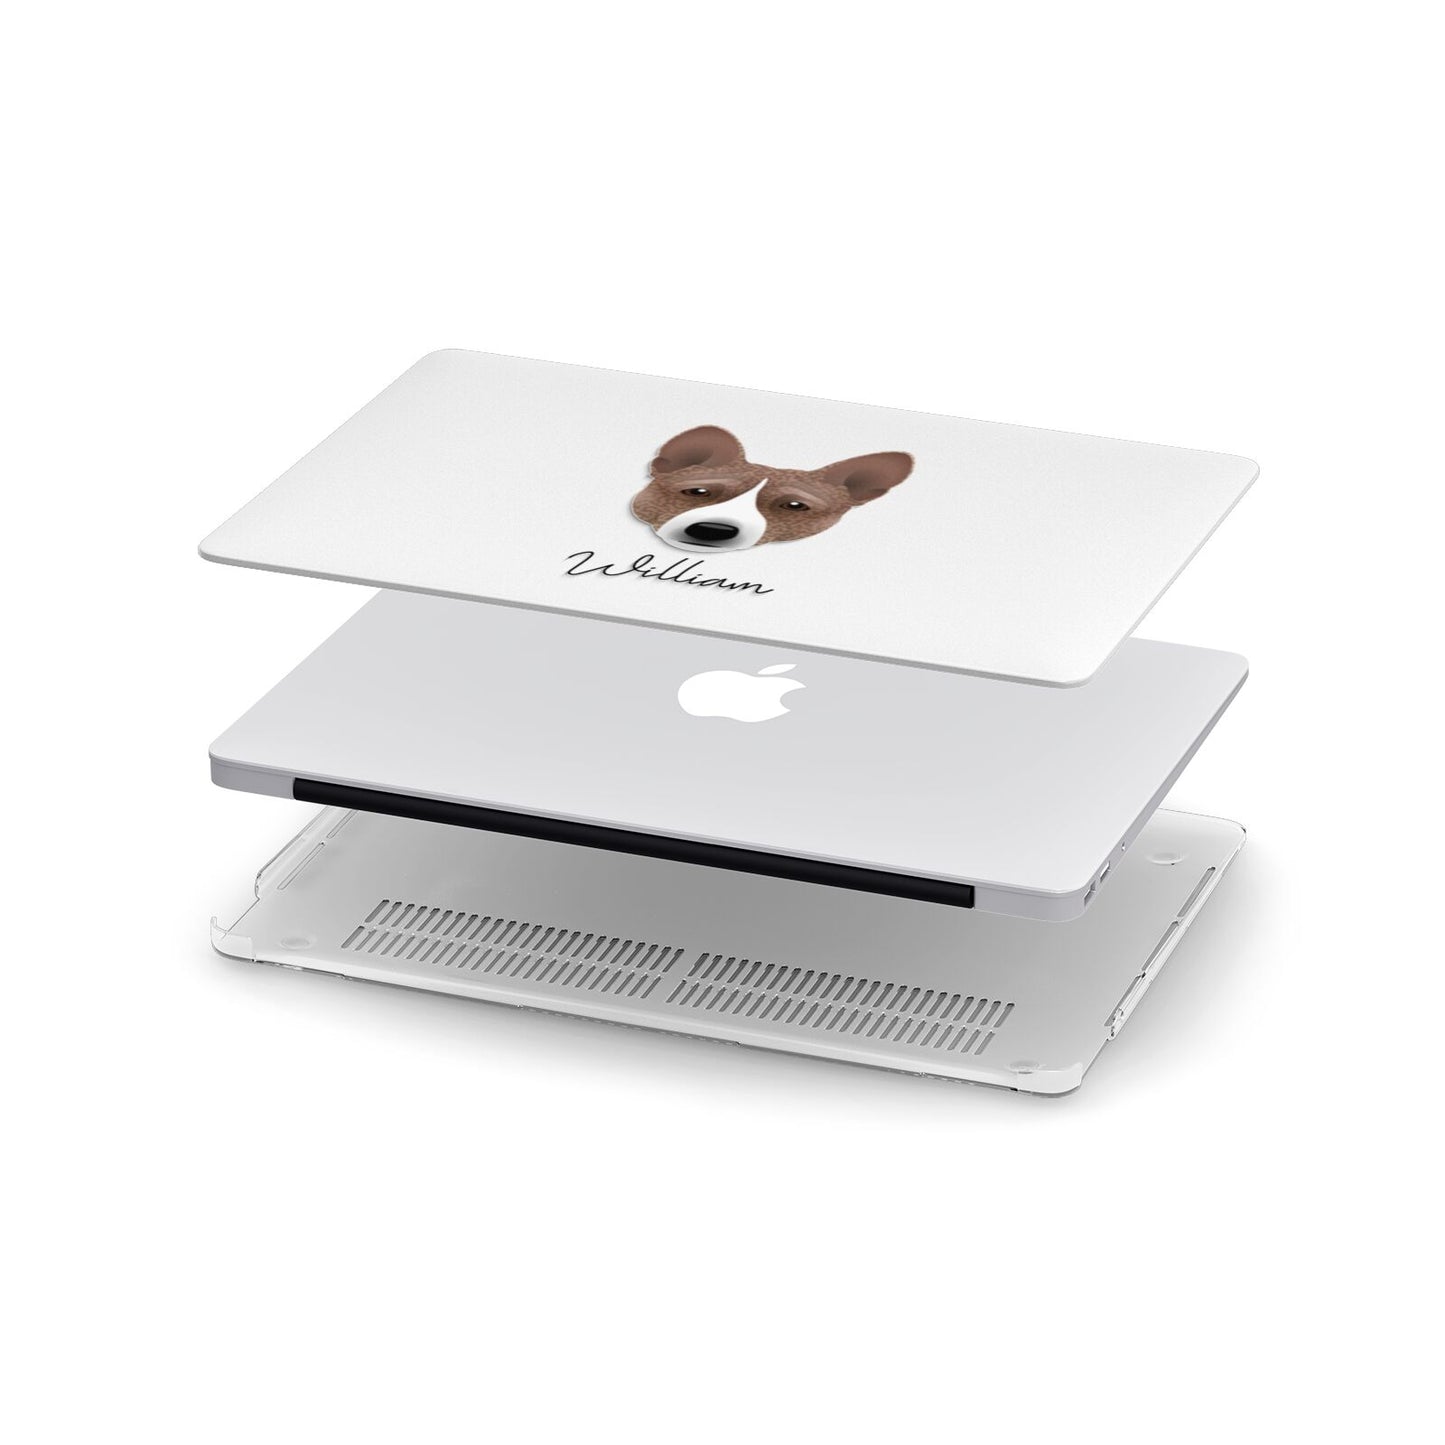 Basenji Personalised Apple MacBook Case in Detail